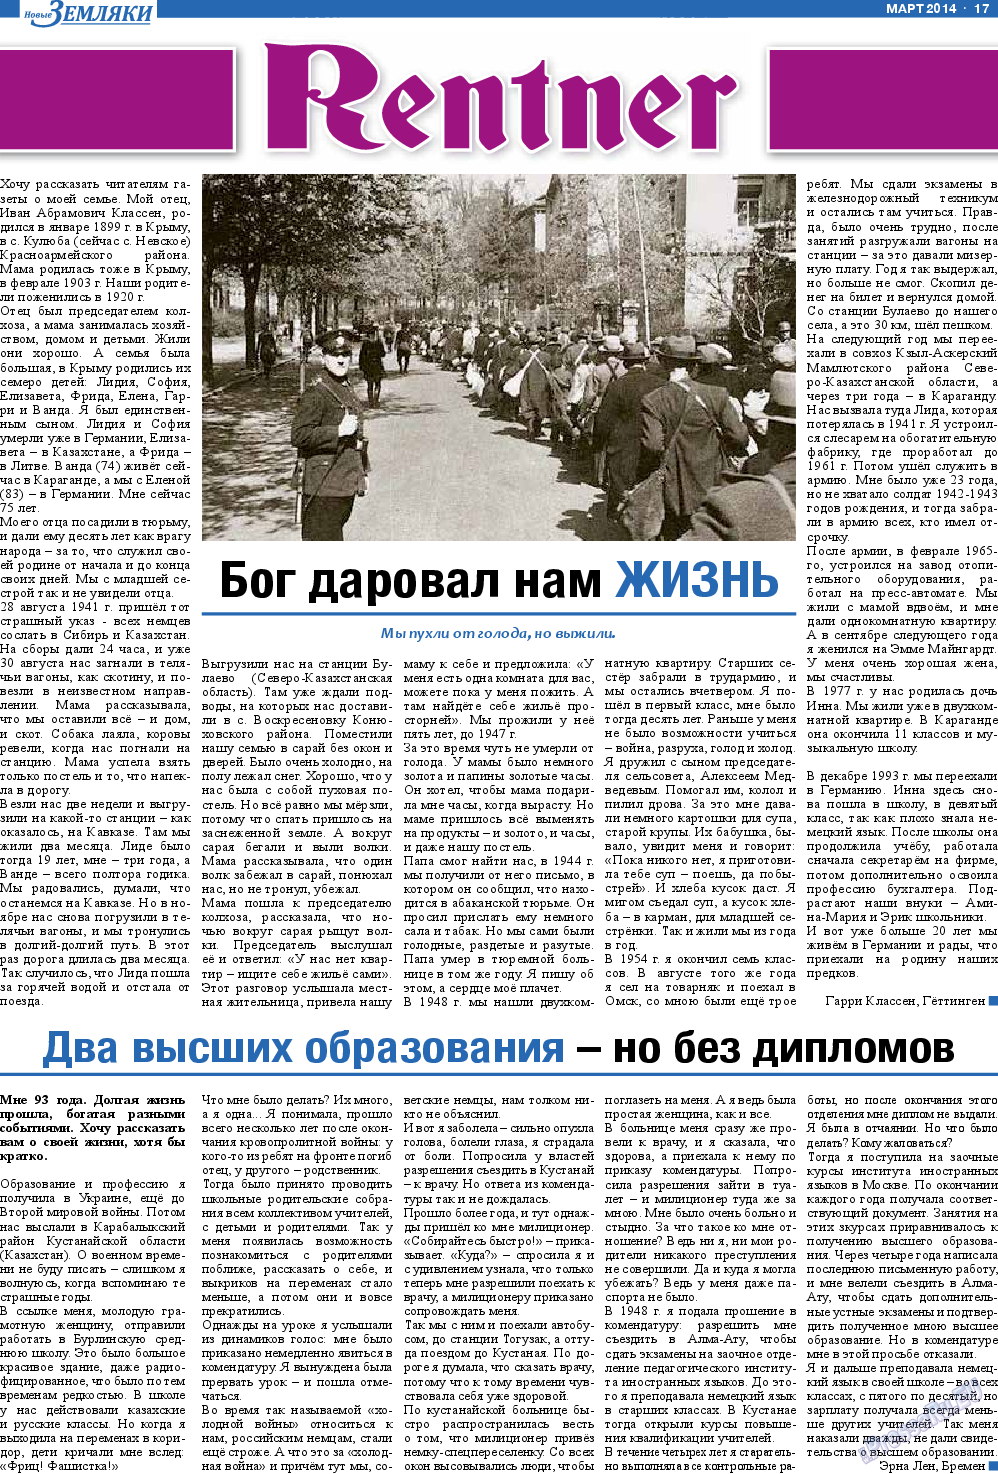 Новые Земляки, газета. 2014 №3 стр.17